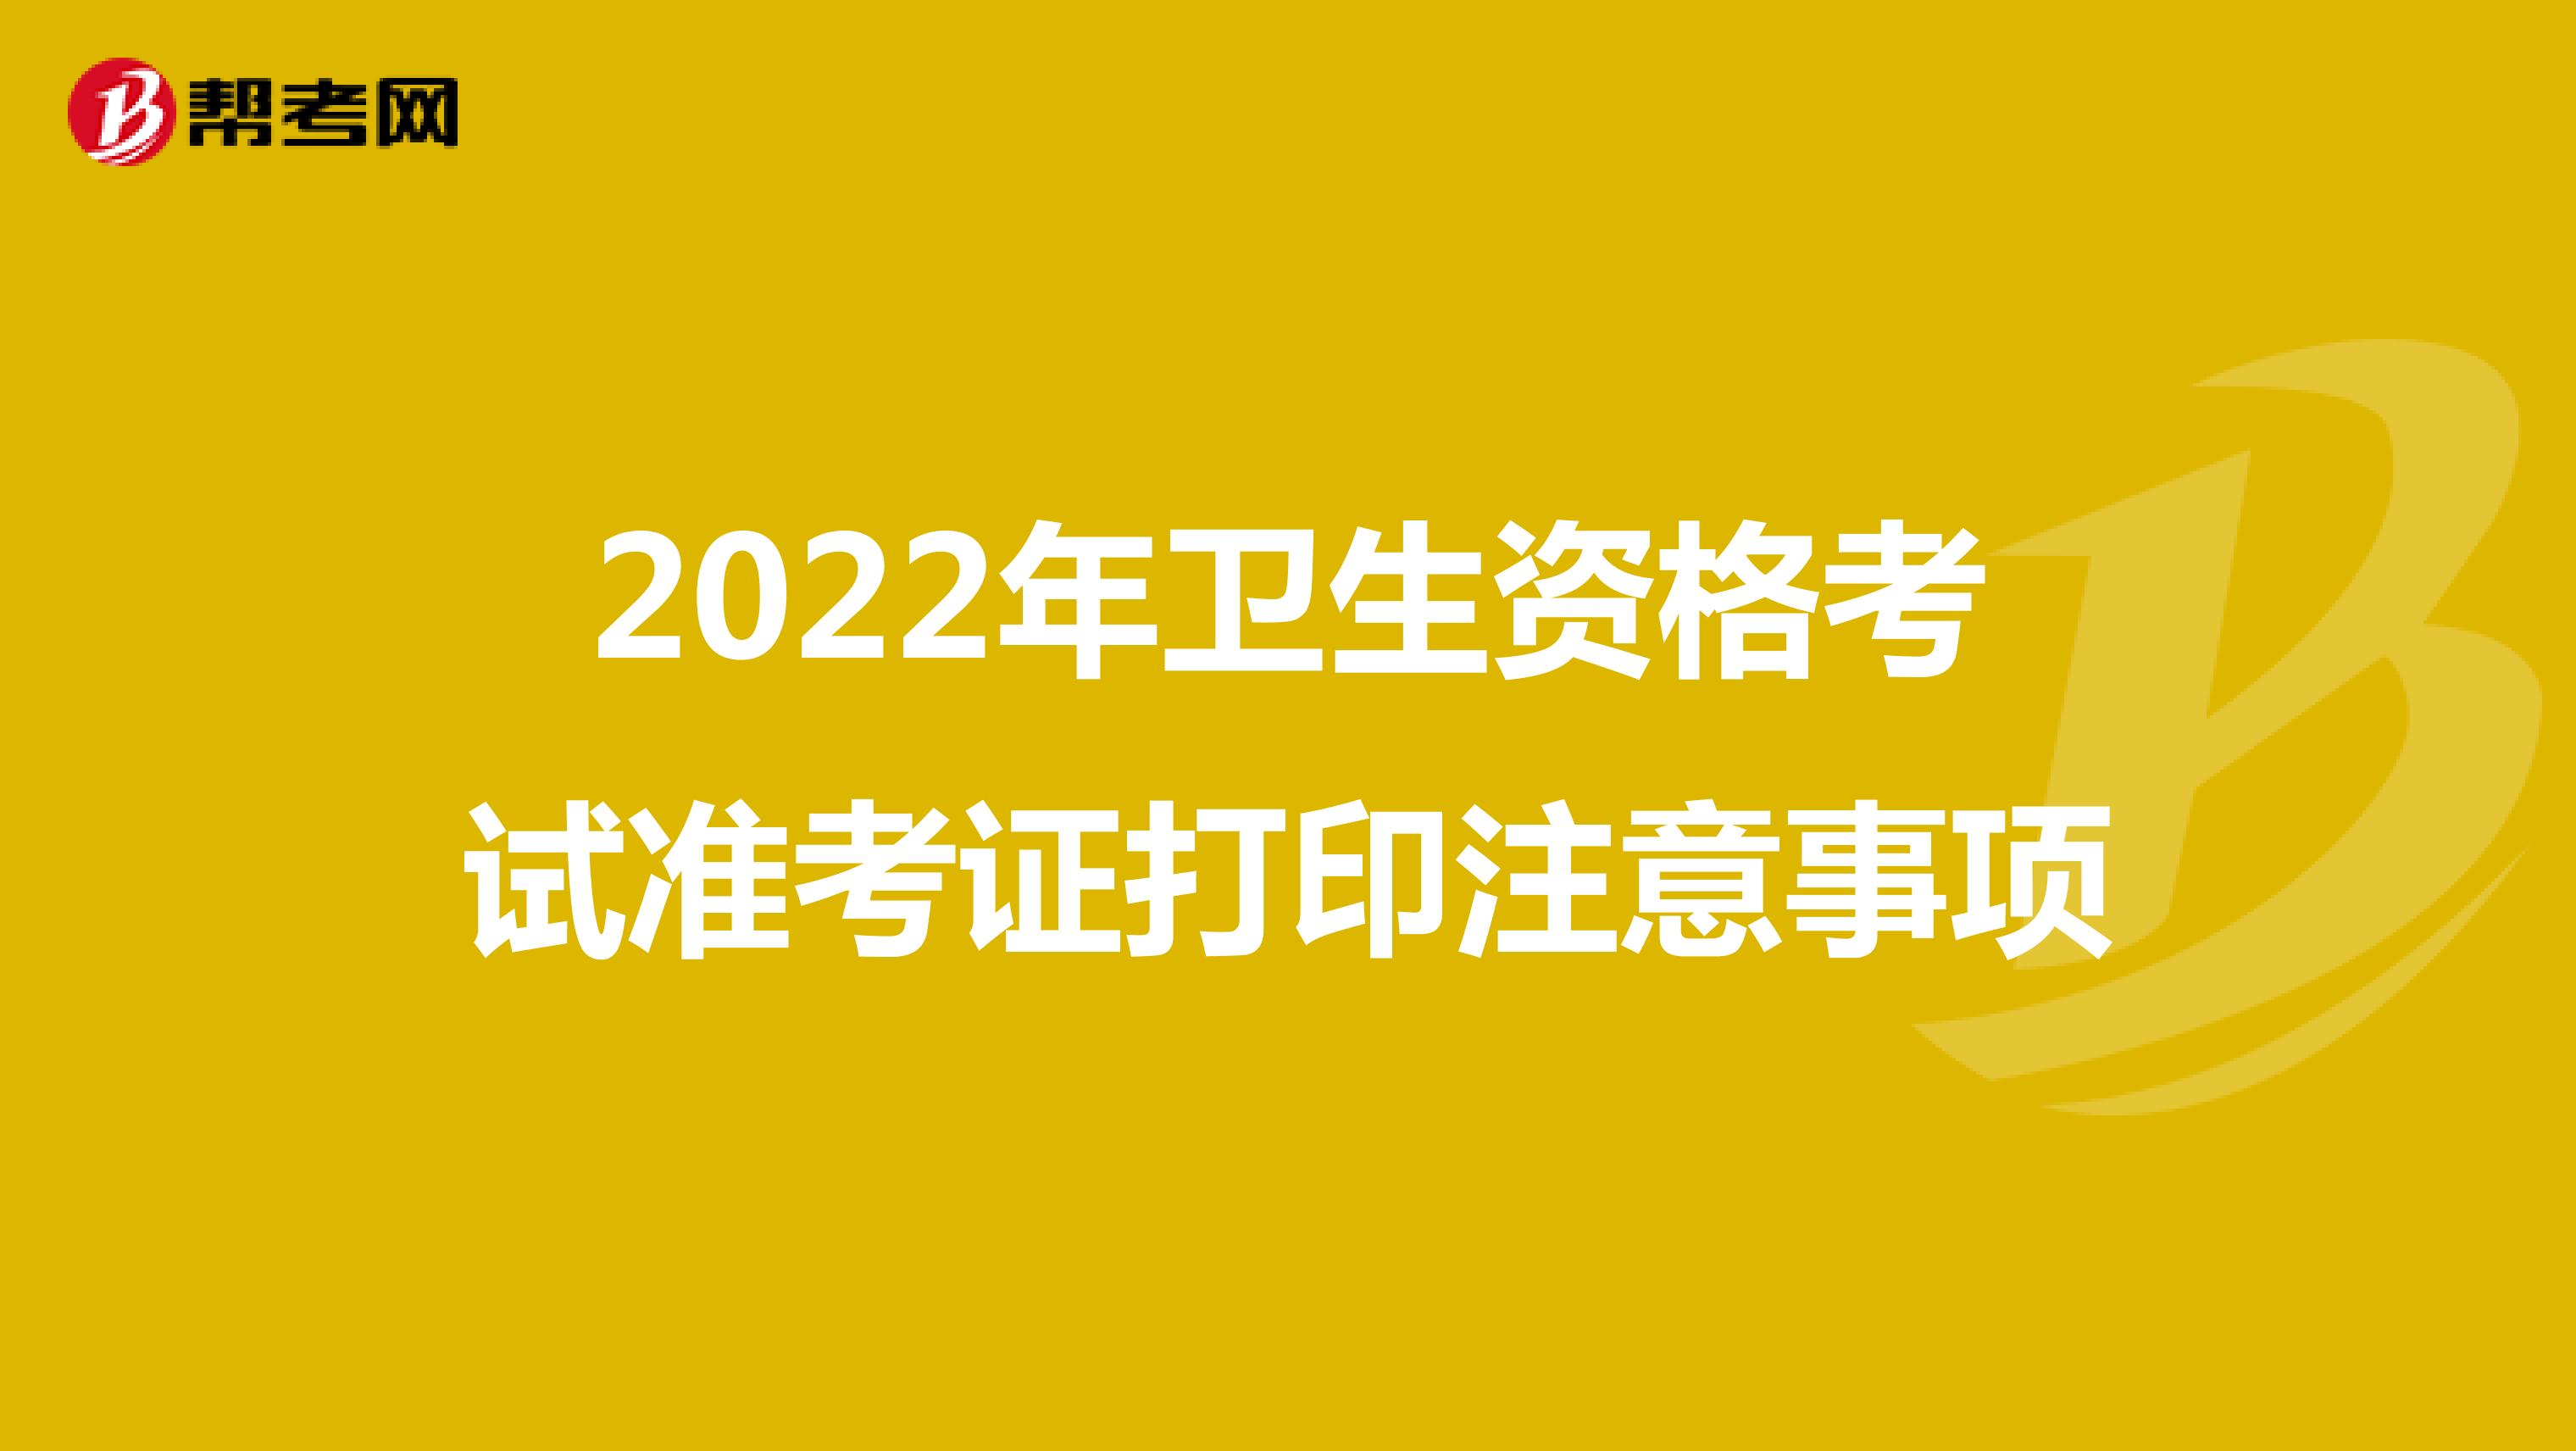 2022年衛生資格考試準考證打印注意事項